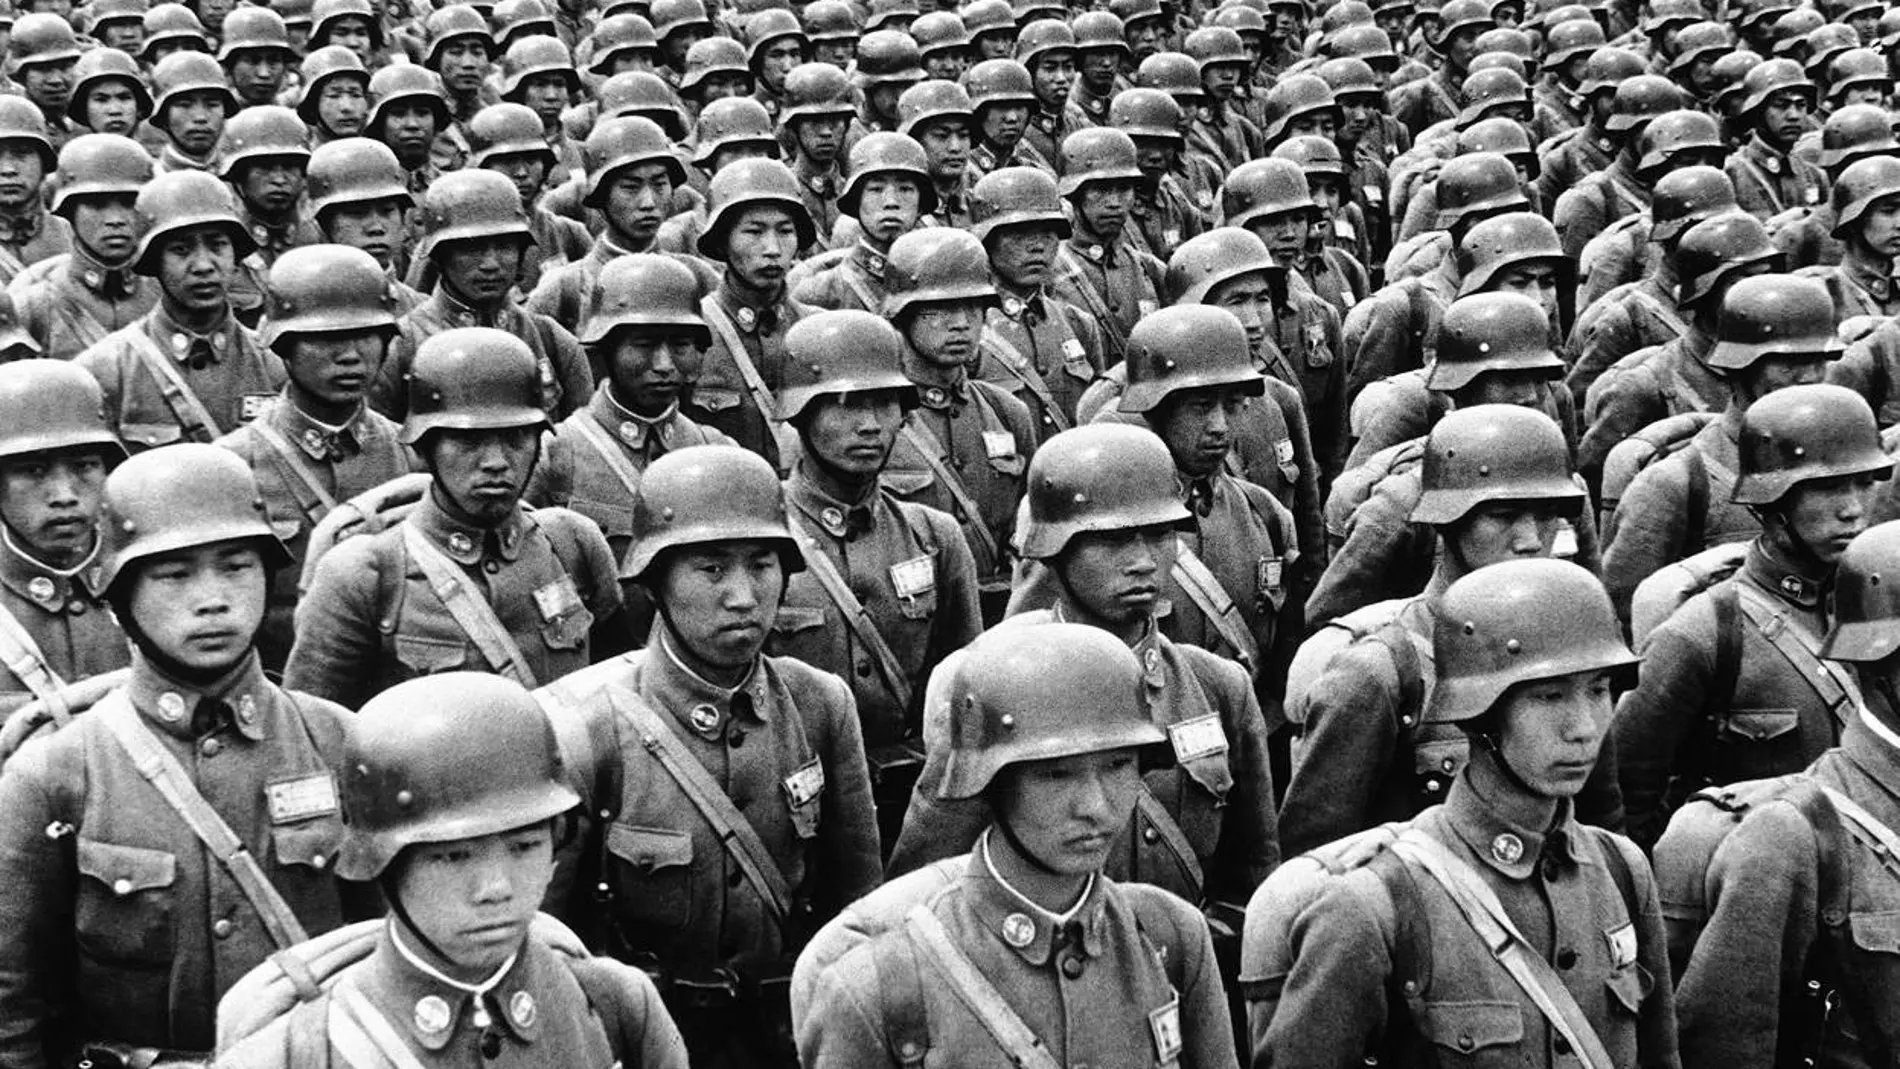 Durante los ocho años de guerra China perdió unos más de 3 millones de soldados, entre ellos niños